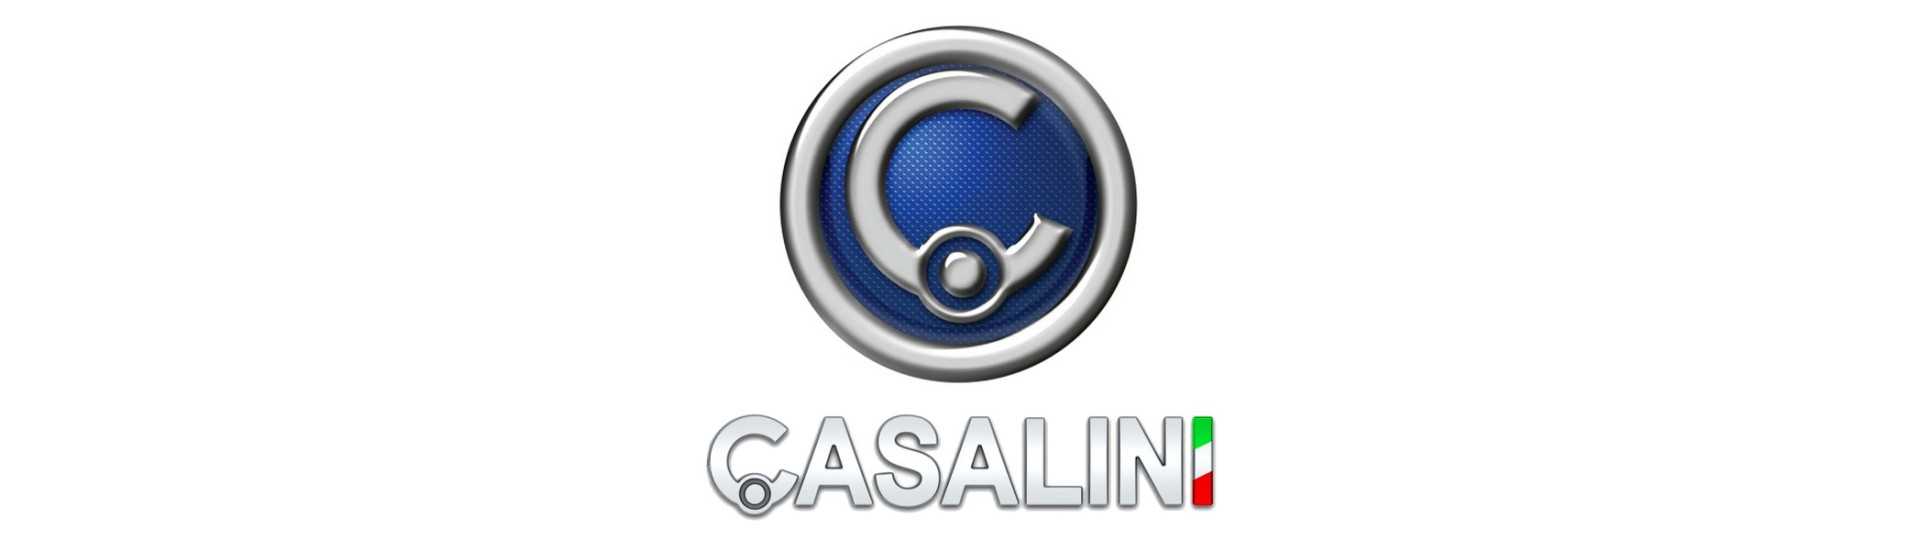 Cable de inversión al mejor precio para coche sin permiso Casalini